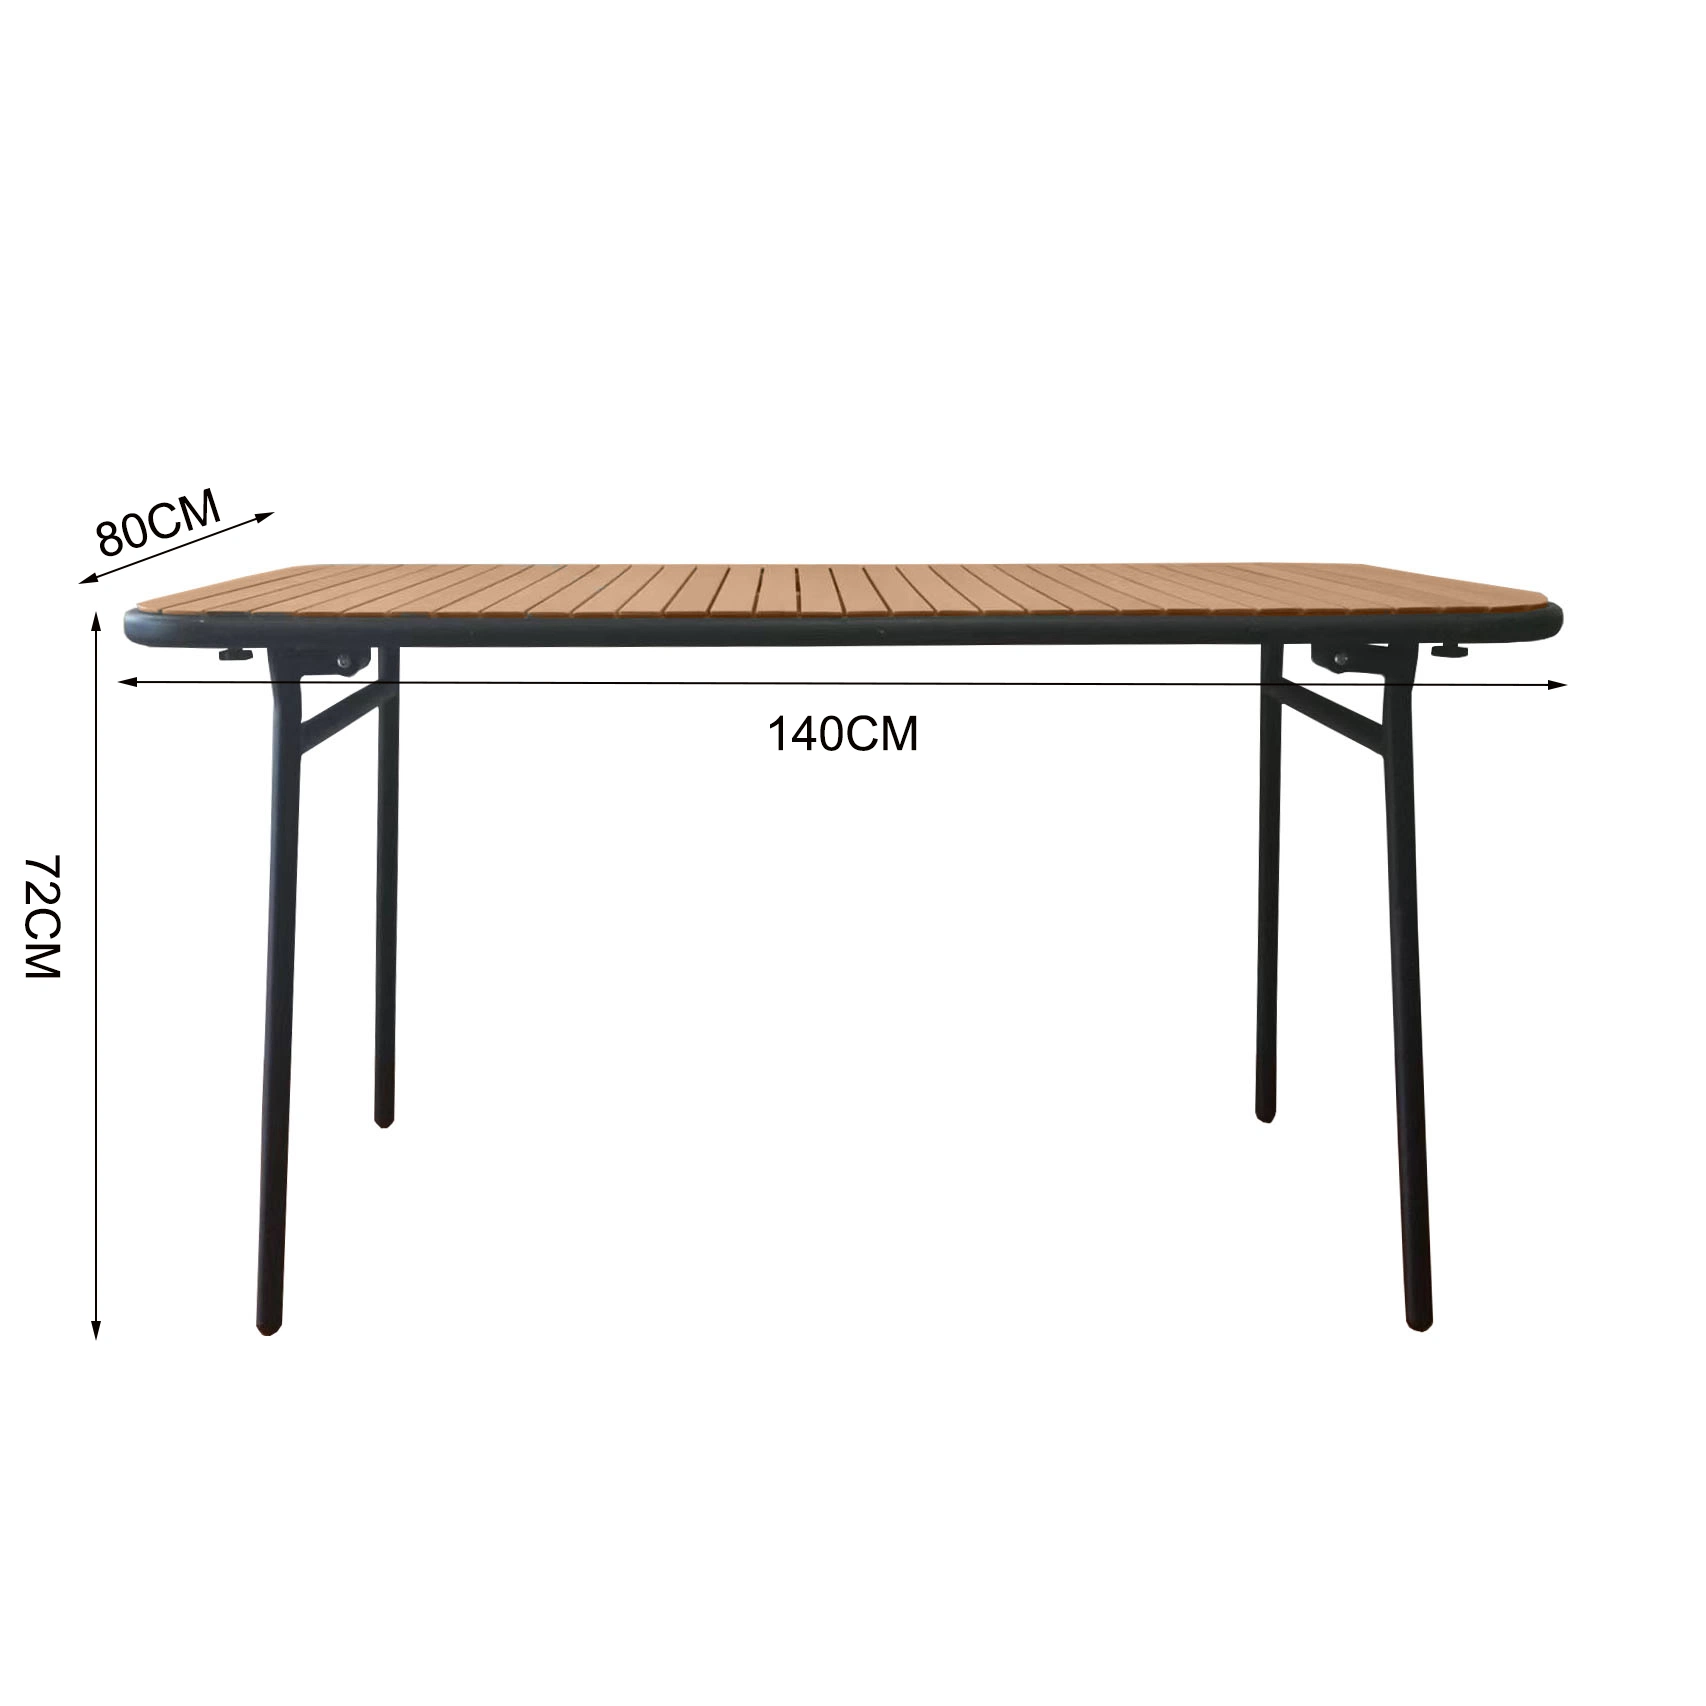 2023 Novo design da estrutura metálica as ripas de madeira dobra exterior mesa de jantar mobiliário moderno